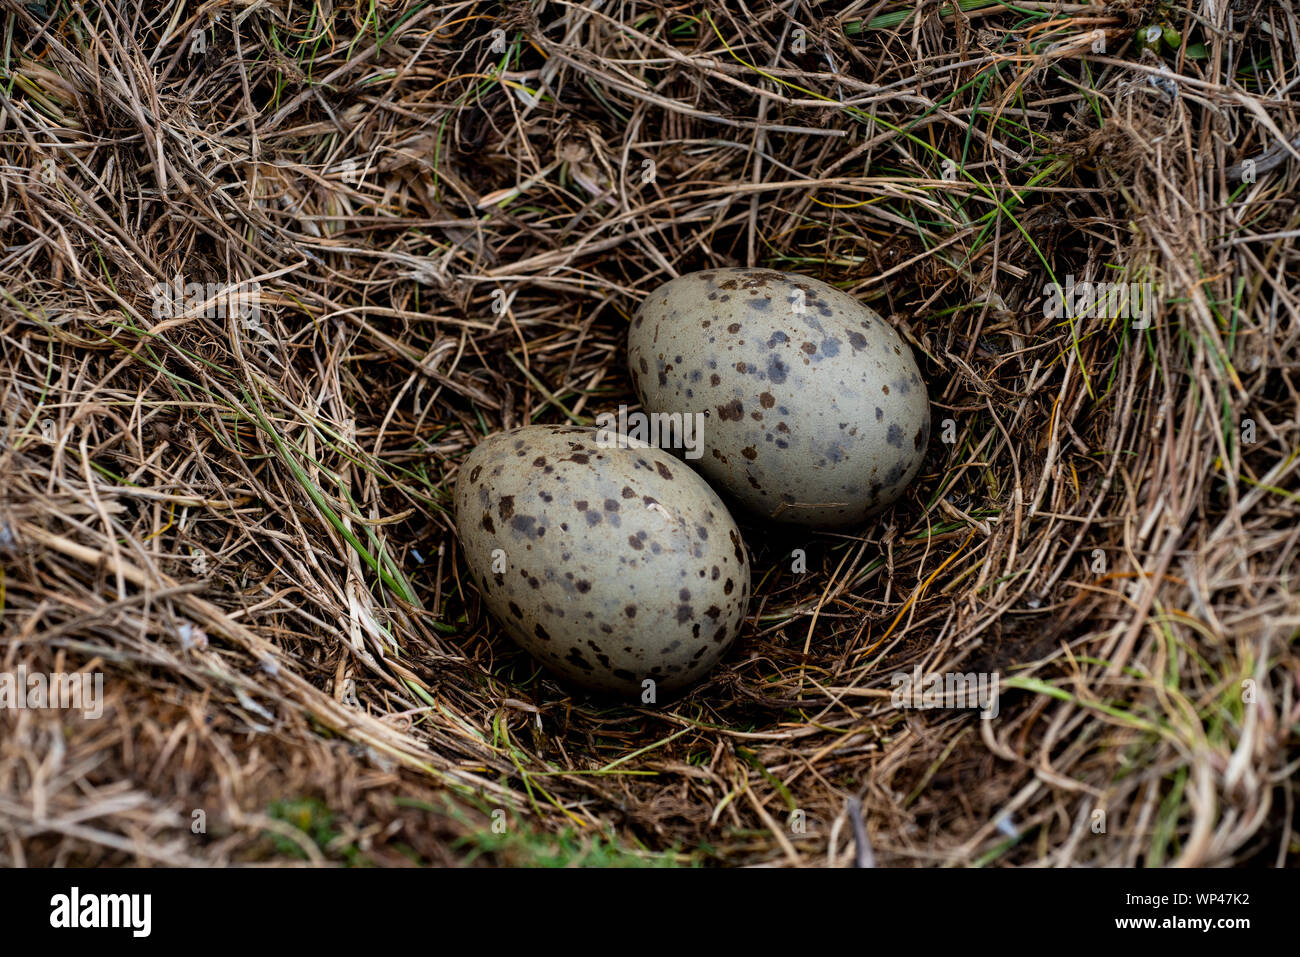 Zwei Heringsmöwen, Larus argentatus, Eier liegen in einem offenen Nest aus Gras auf den Farne Islands, Northumberland, Großbritannien. Olivgrün grau braune Flecken Stockfoto